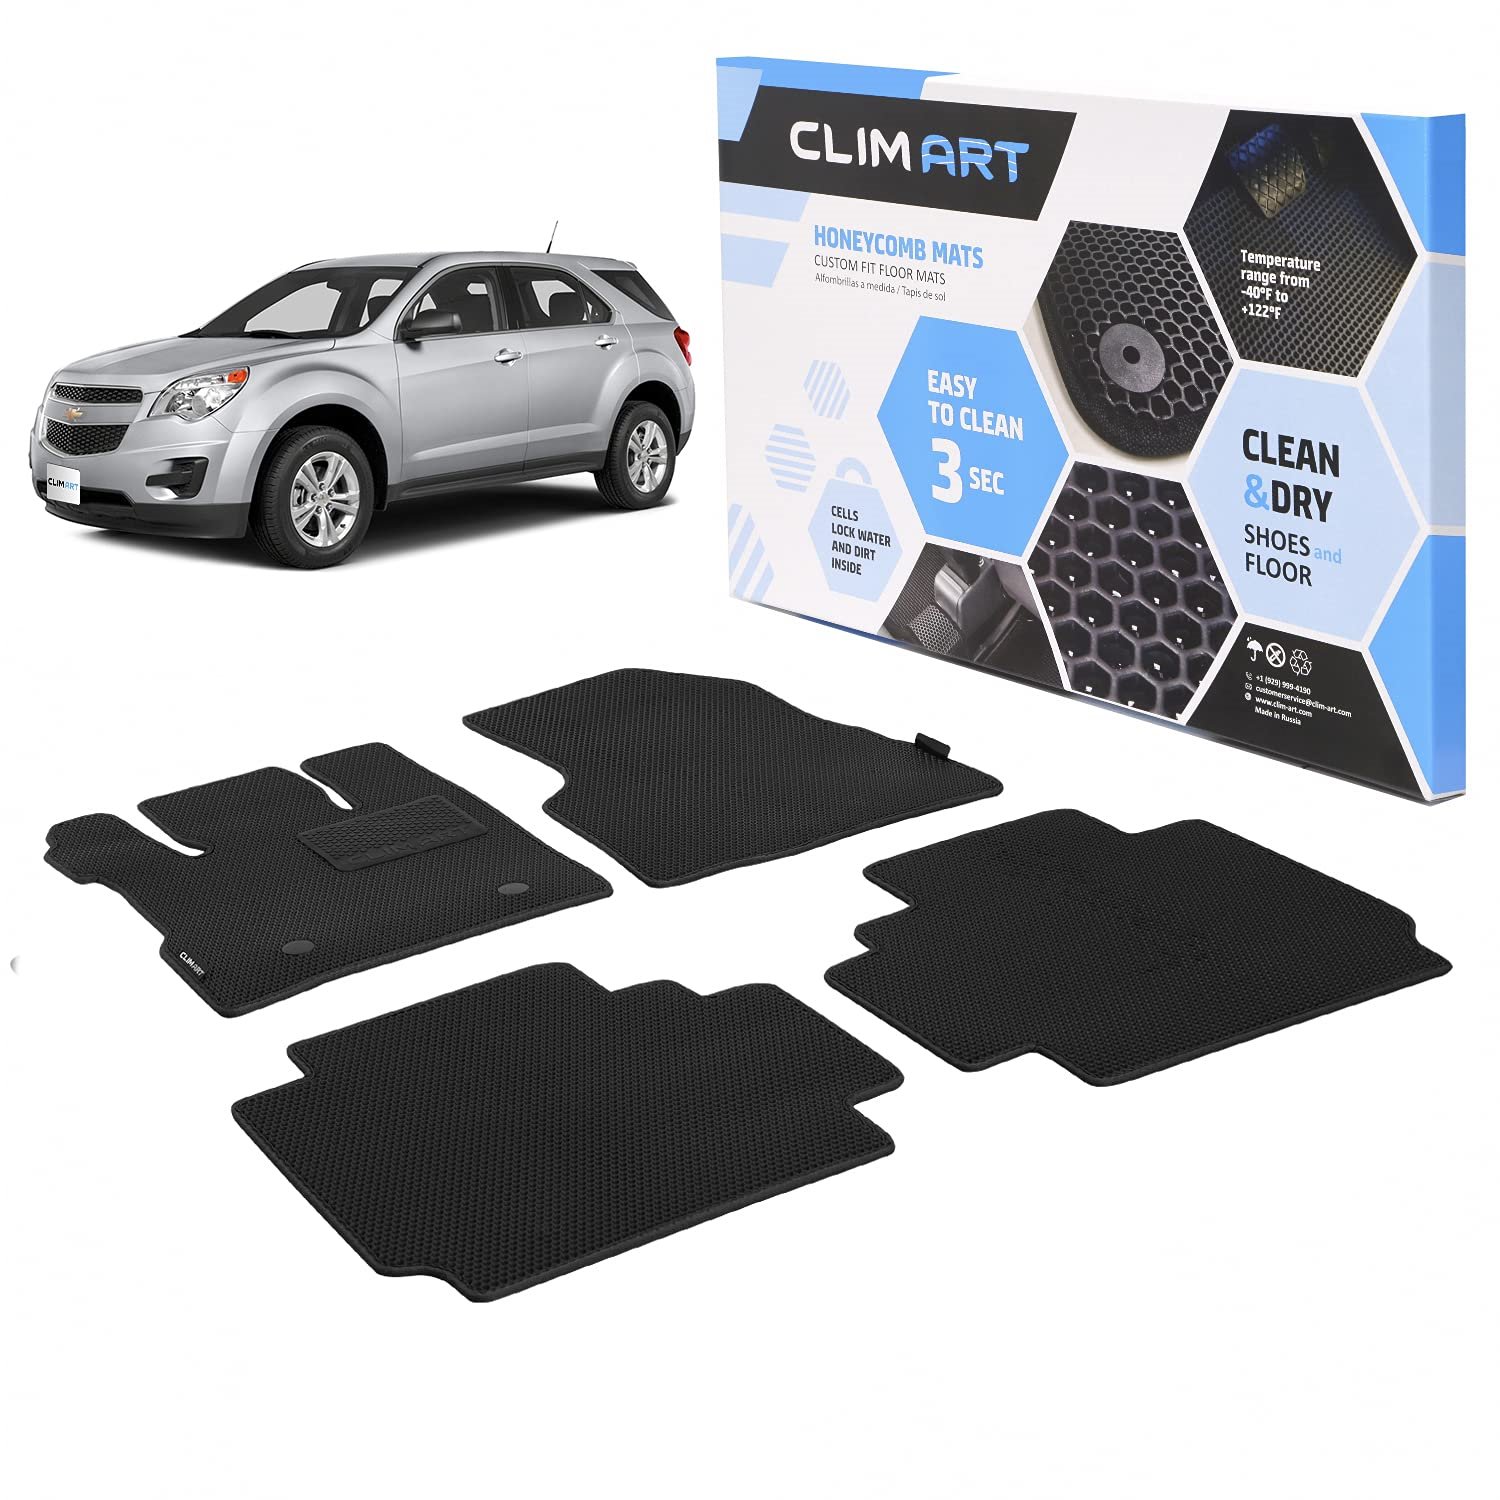 CLIM ART Honeycomb Custom Fit Floor Mats For